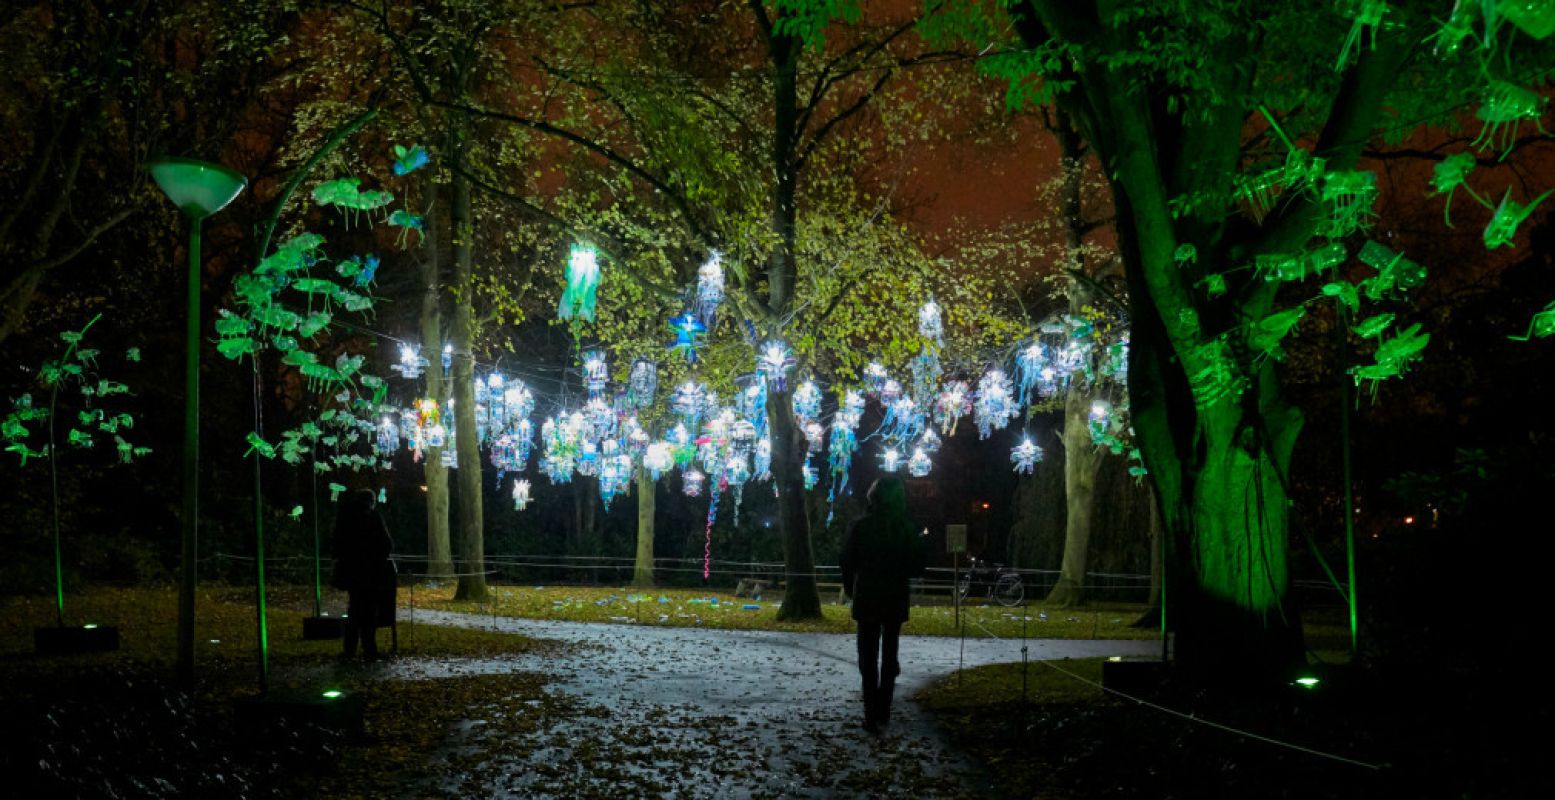 Raak betoverd door de wonderlijke wereld van lichtkunst. Foto: Claus Langer, GLOW Eindhoven 2015.